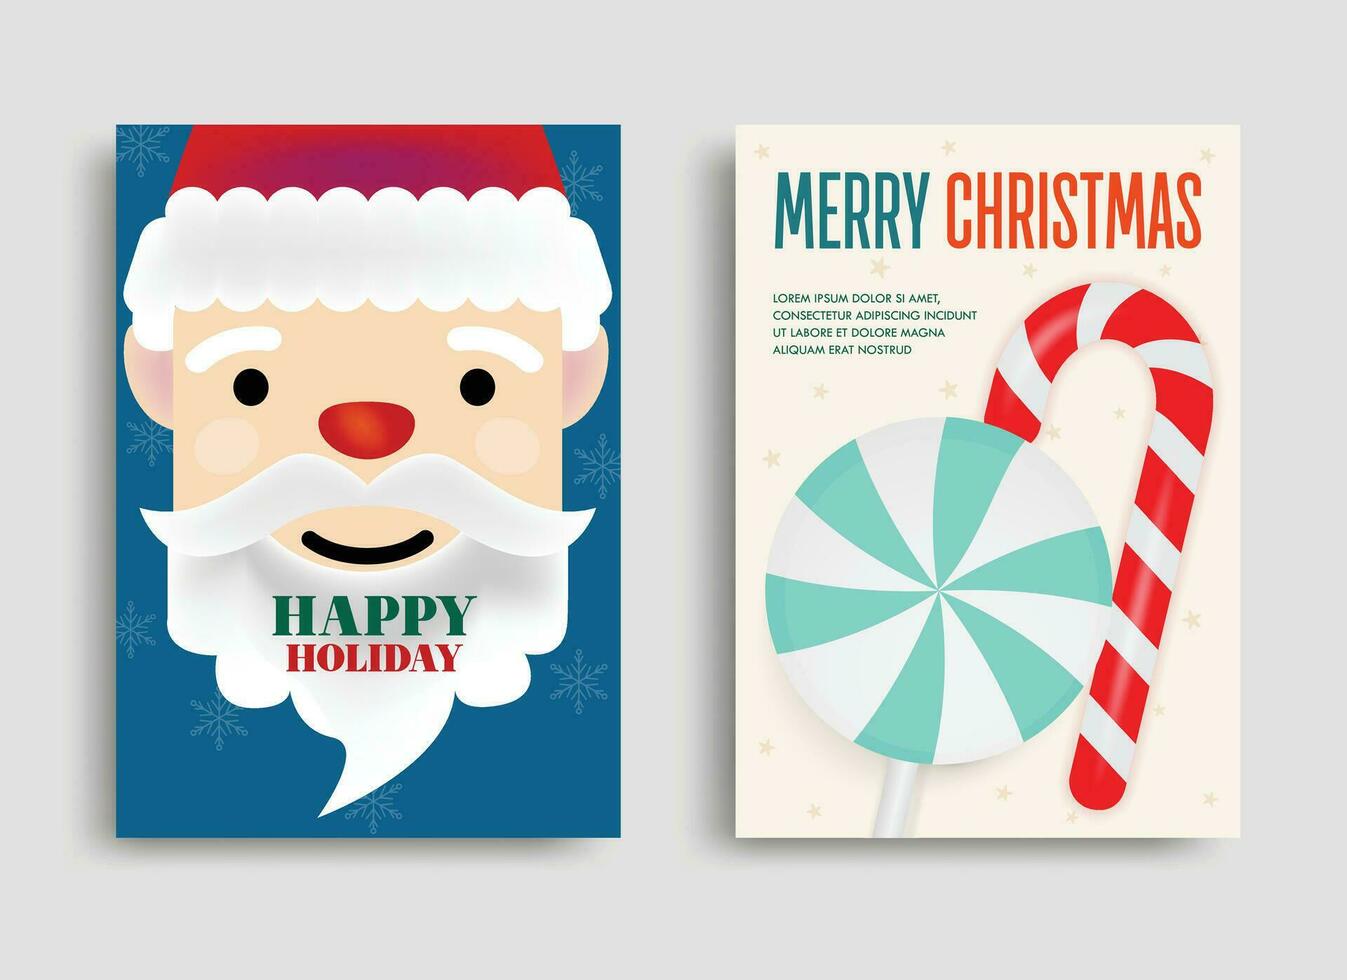 ilustración de Papa Noel noel, chupete, y caramelo caña volantes para el Navidad estación. con alegre Navidad texto. vector